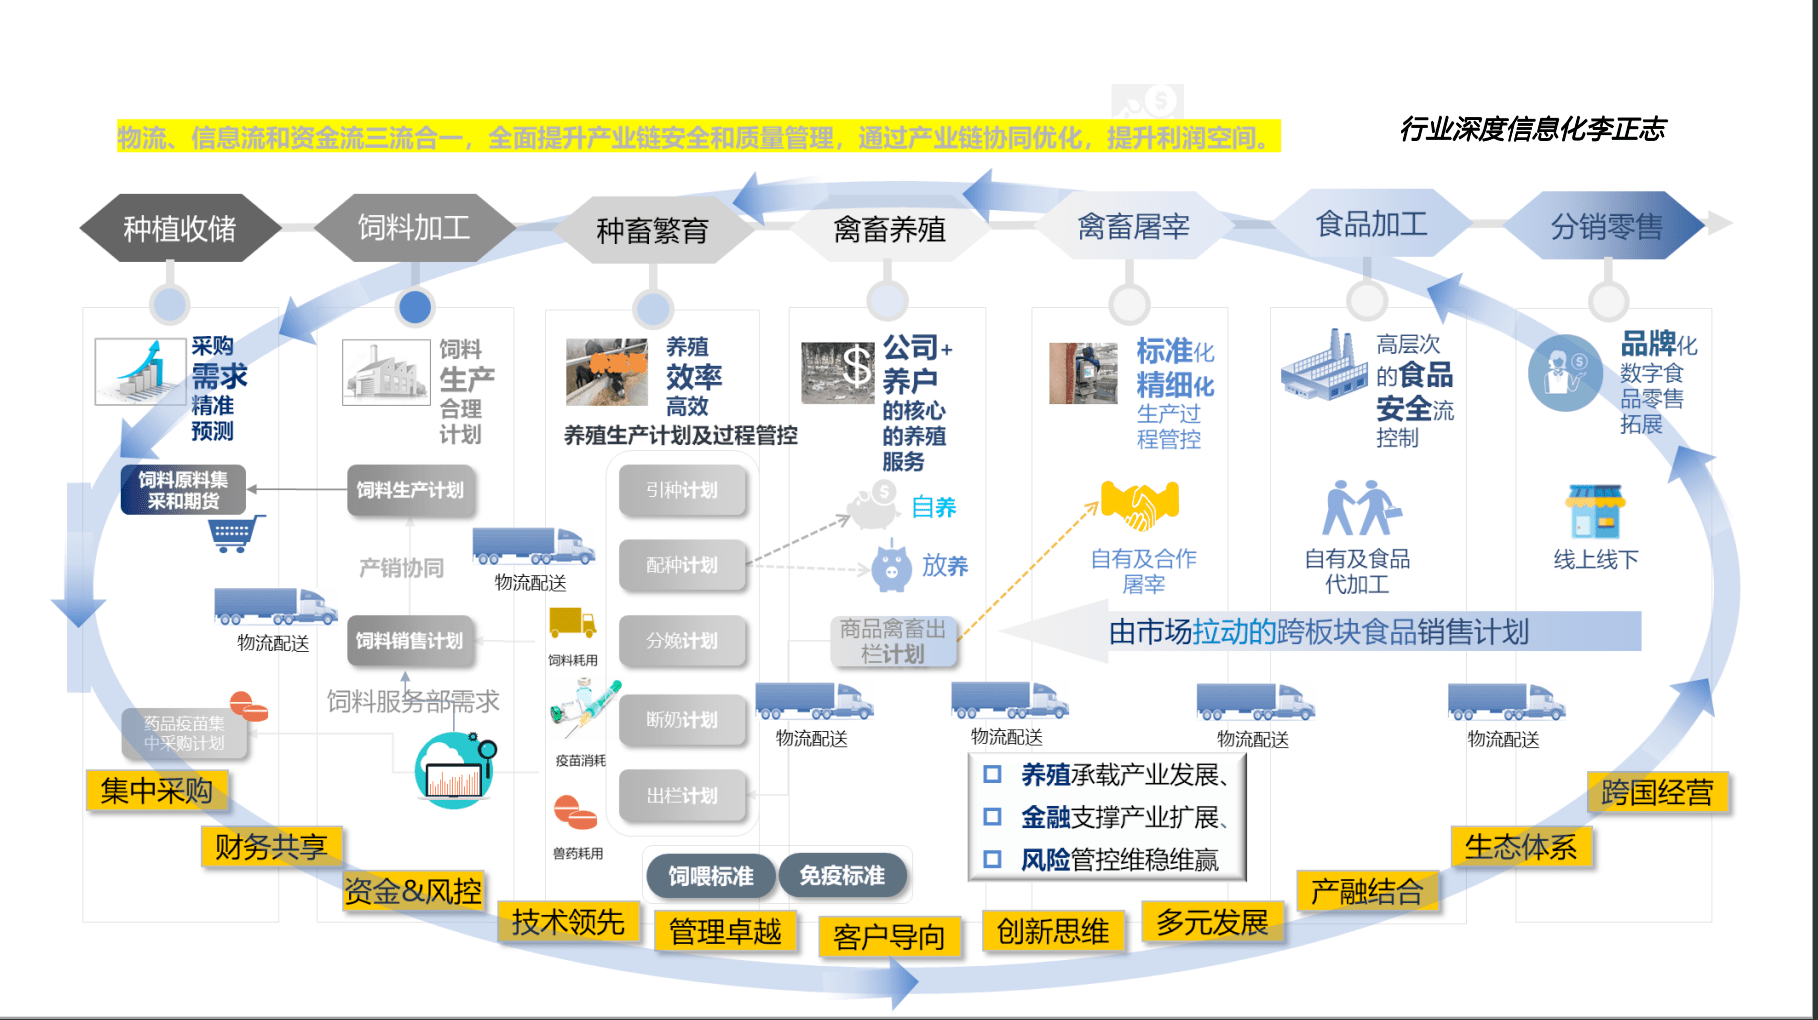 宝运莱官网华夏农牧行业讯息化结构-天主视角数字化运营(图1)